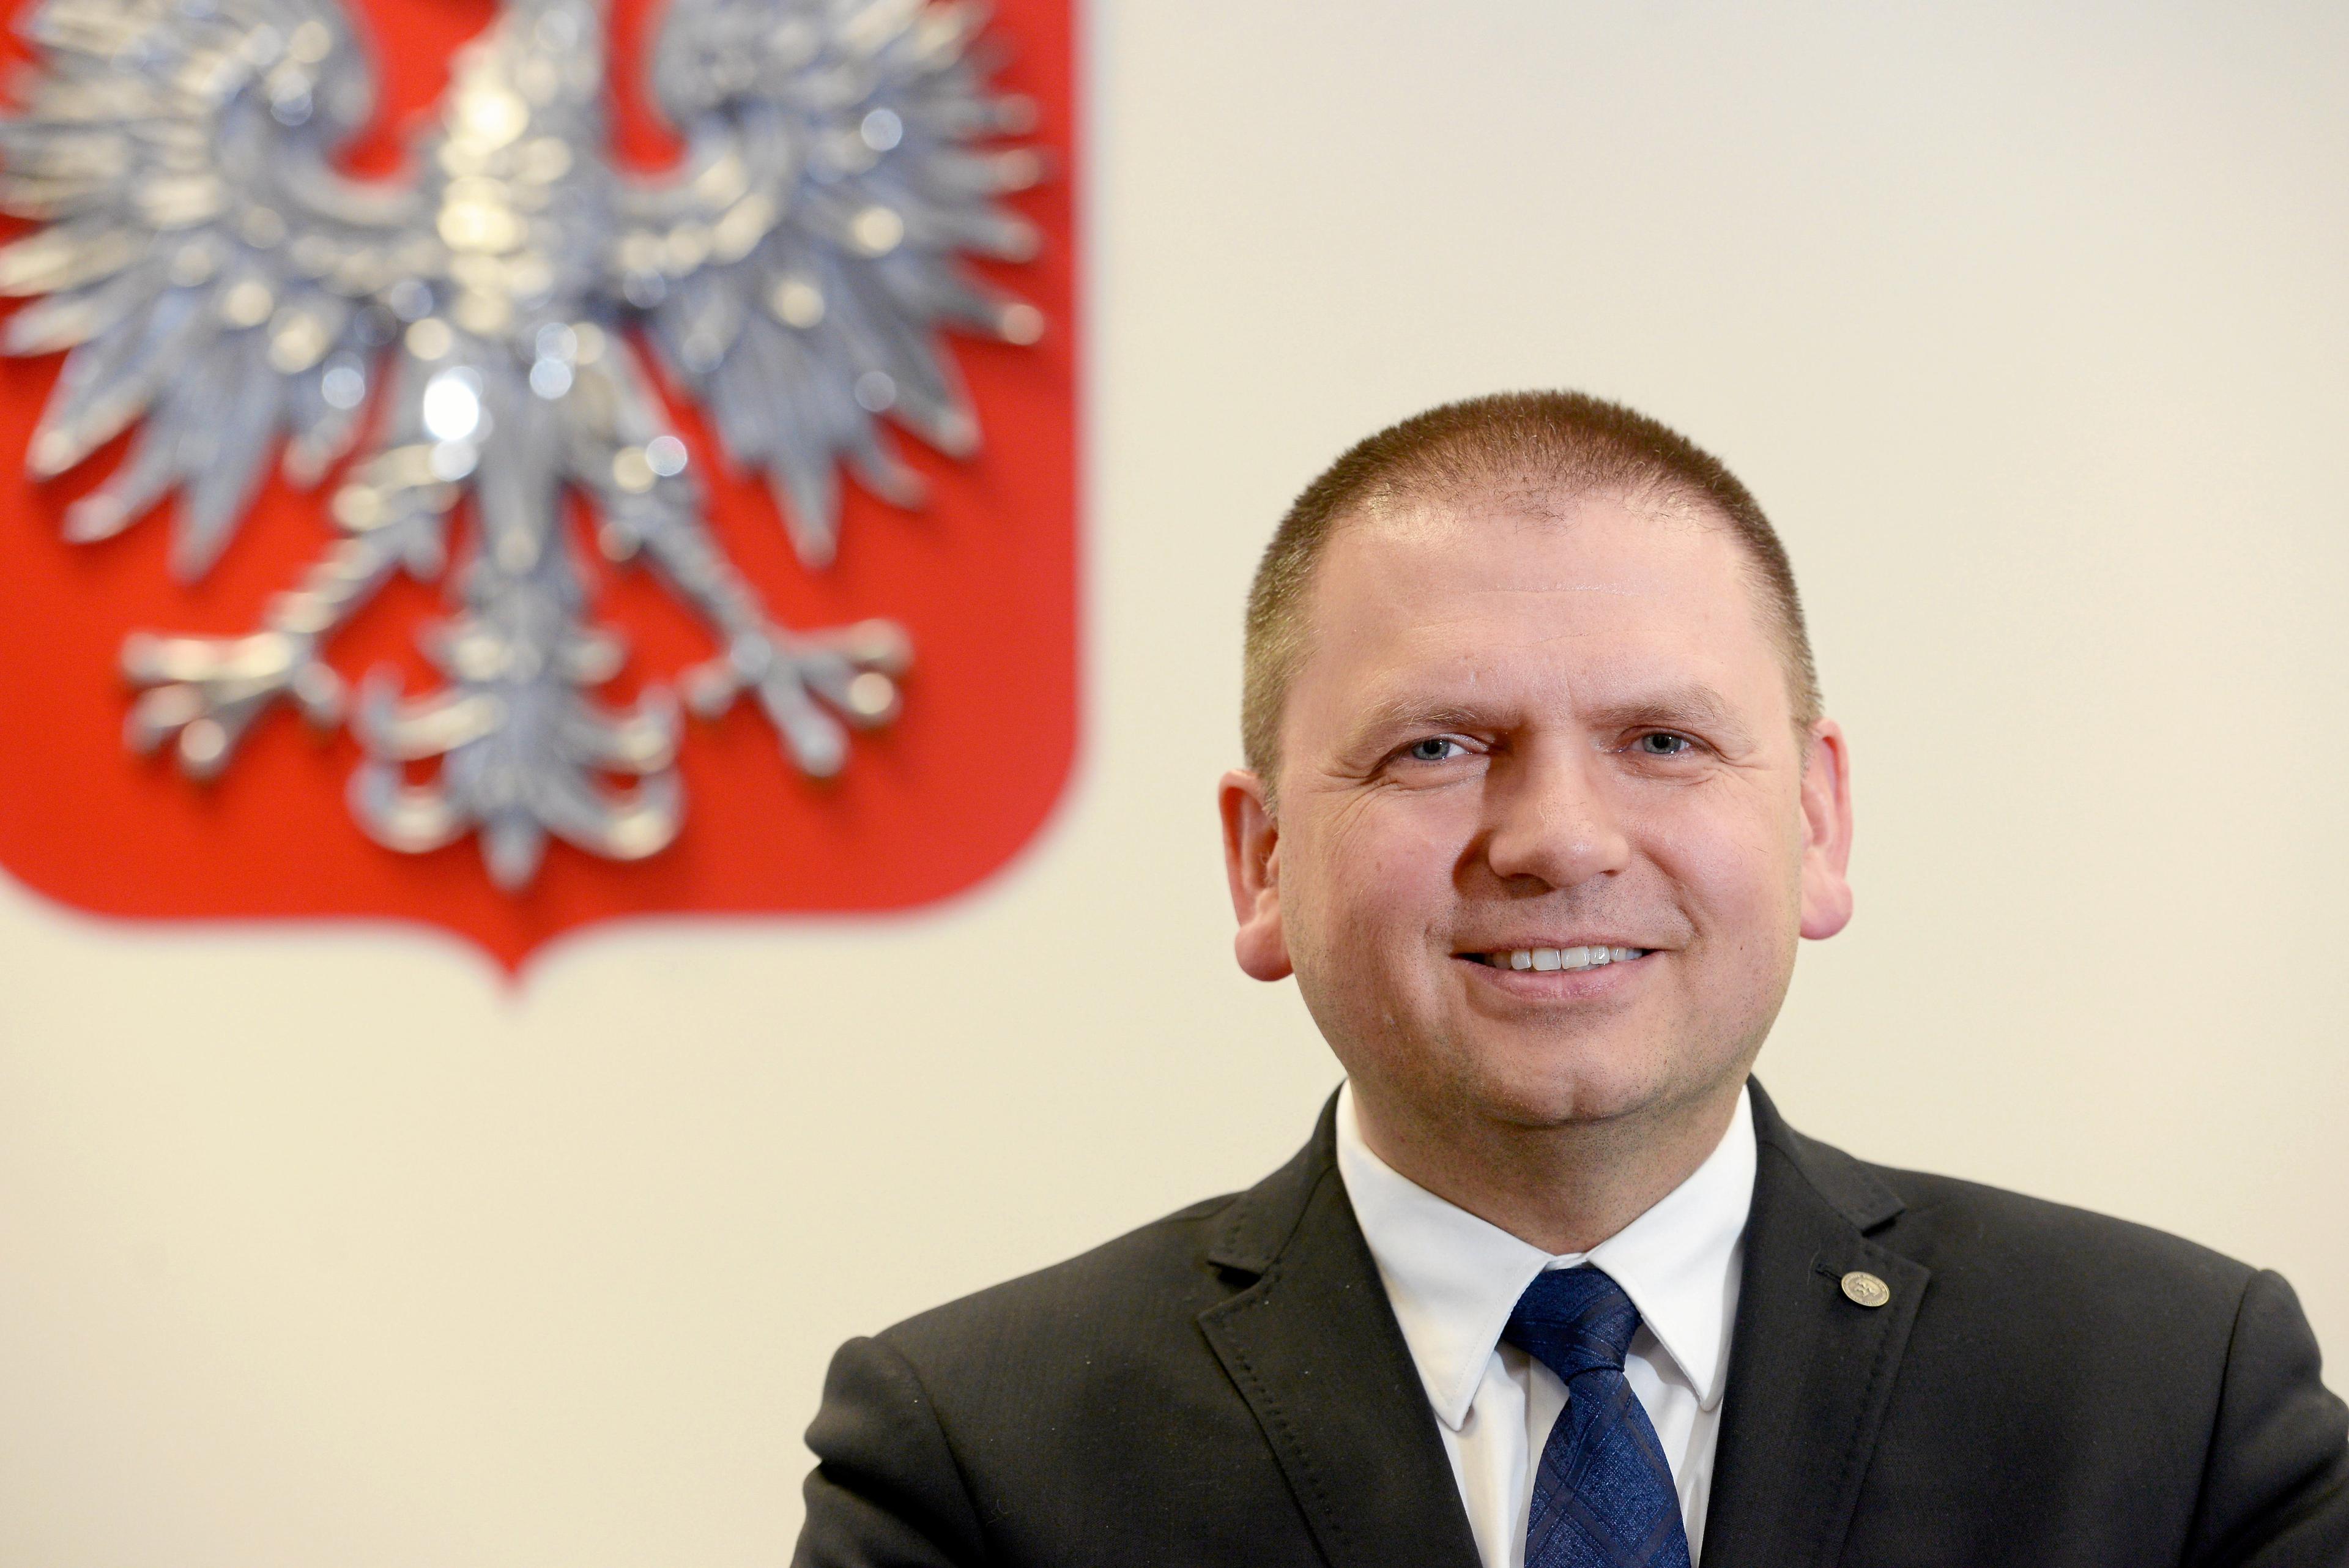 Maciej Nawacki, prezes Sądu Okręgowego w Olsztynie